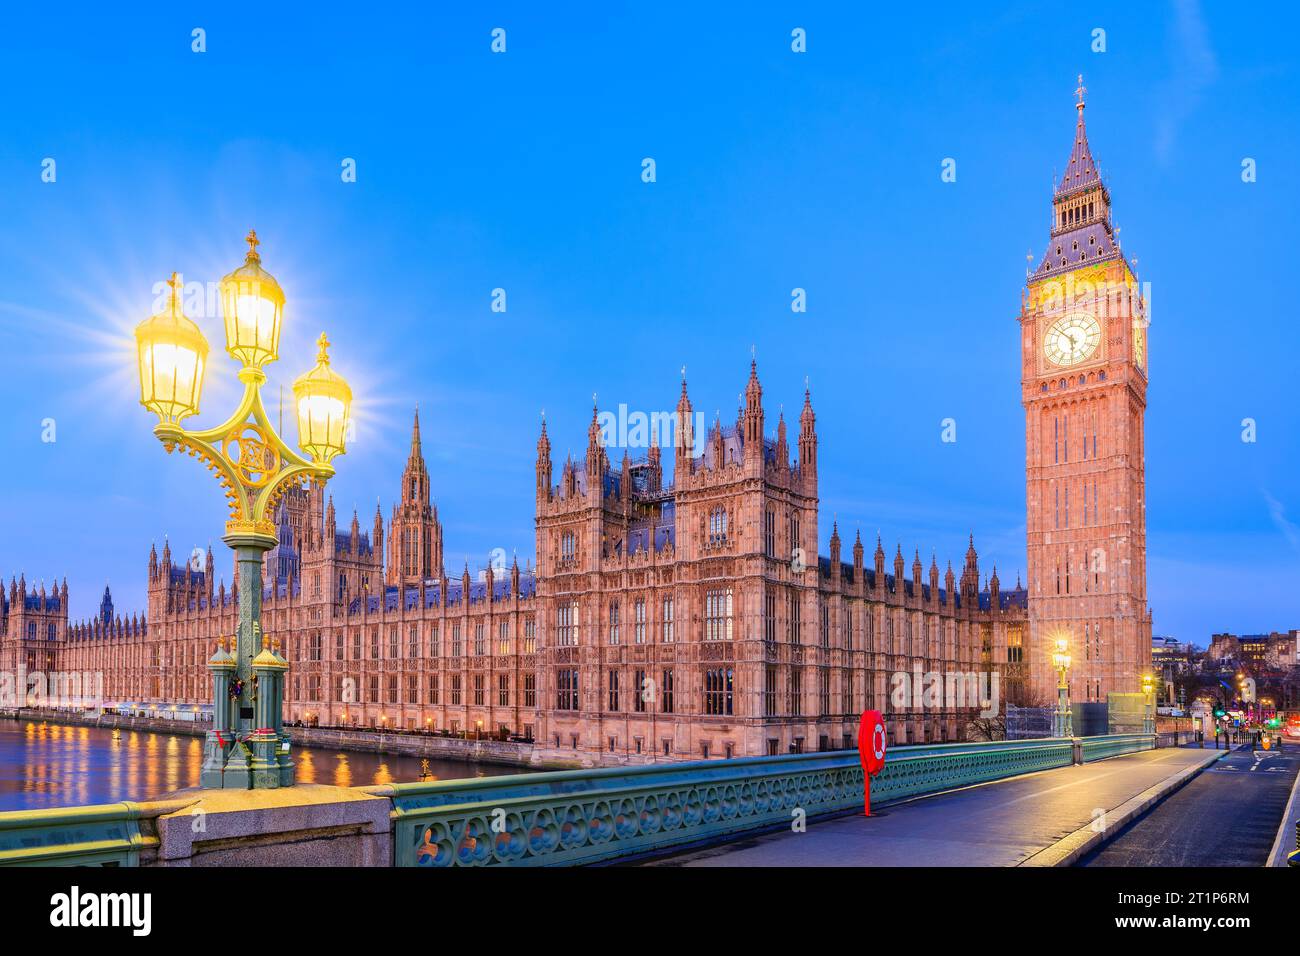 Londres, Angleterre, Royaume-Uni. Le Palais de Westminster, Big Ben et Westminster Bridge avant le lever du soleil. Banque D'Images